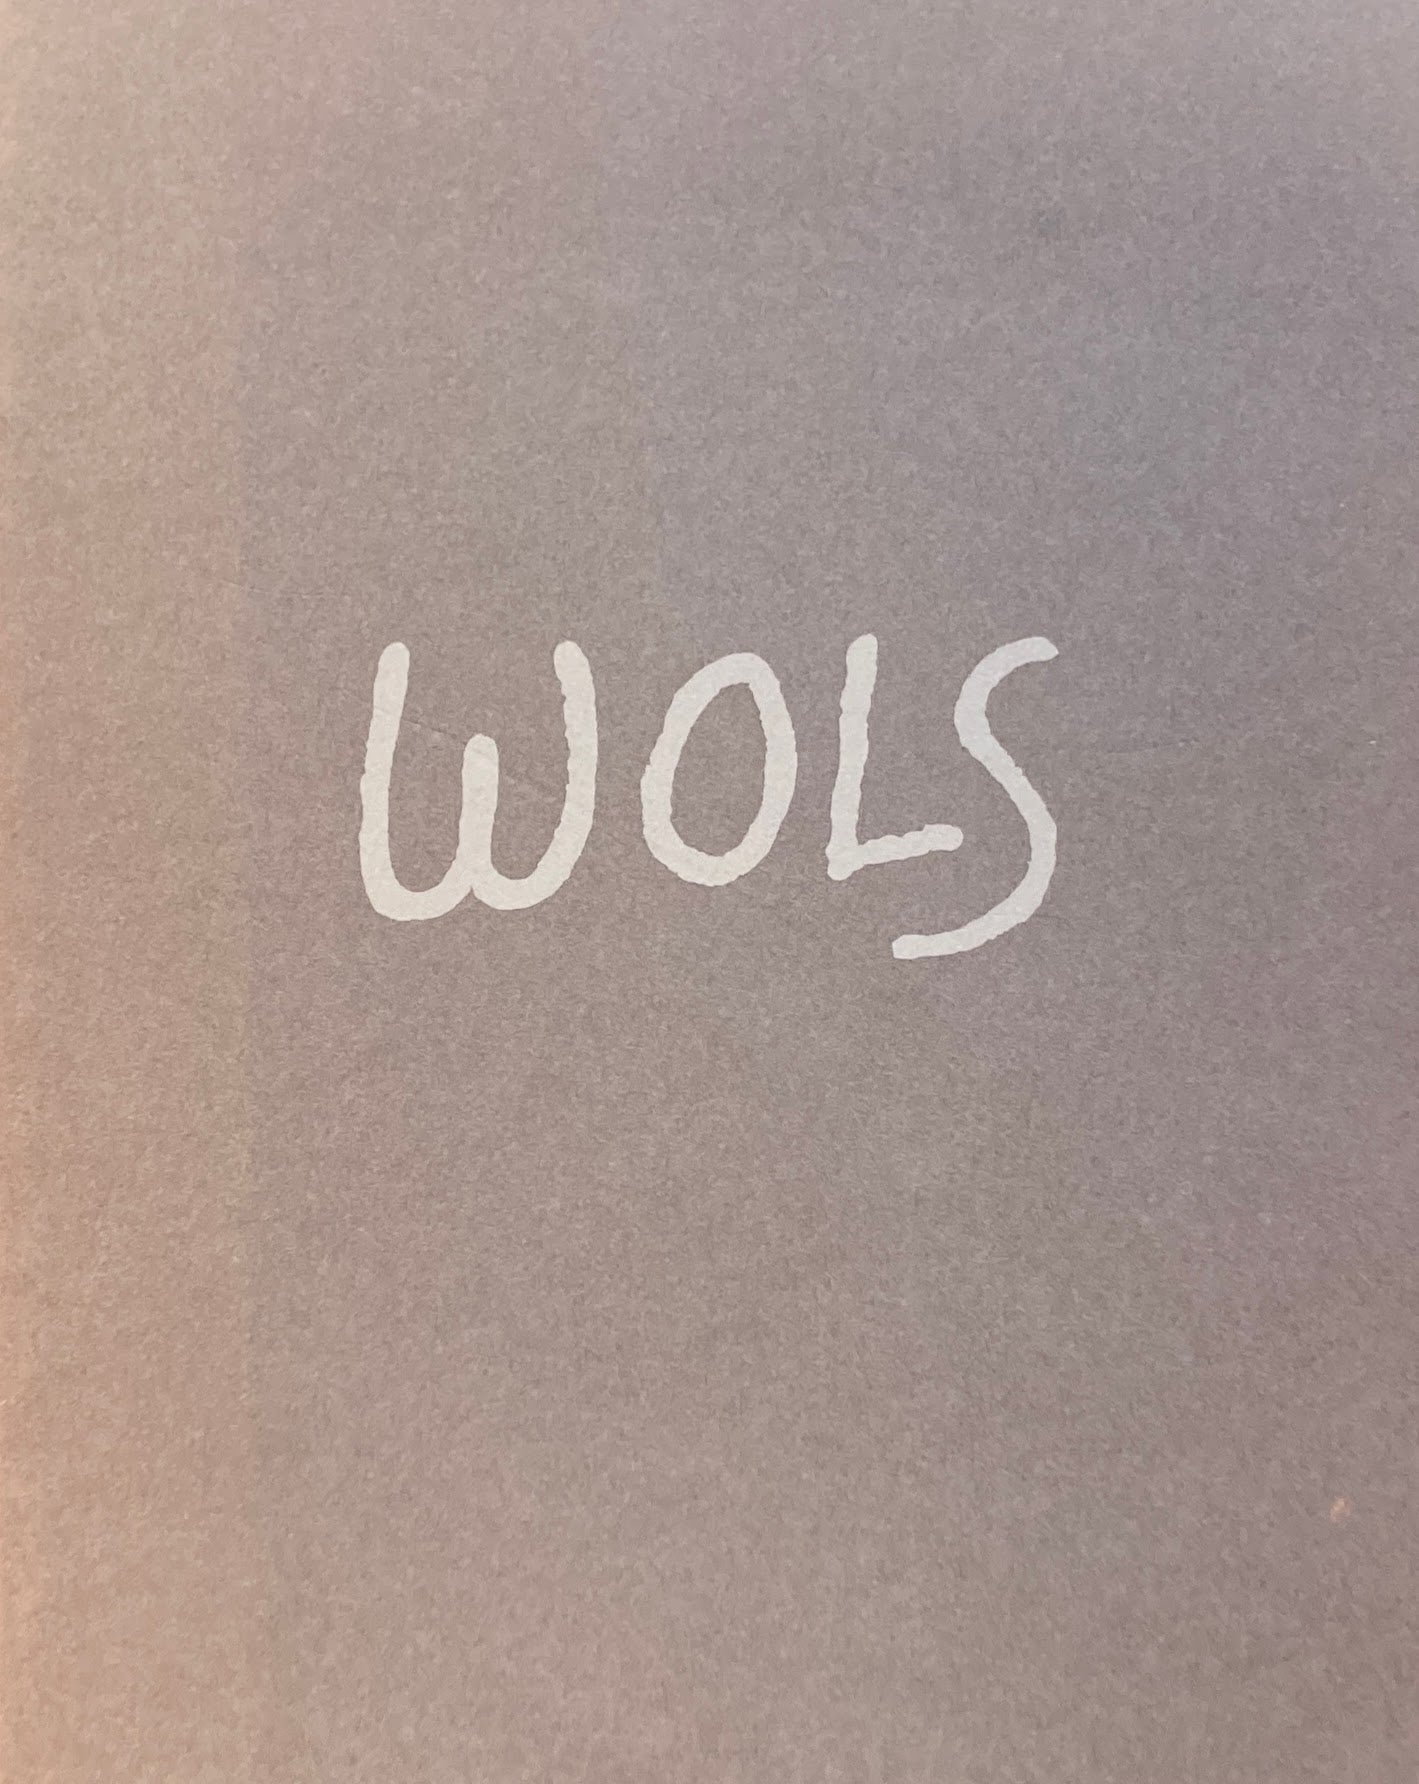 WOLS　1913‐1951　ヴォルス展　1997